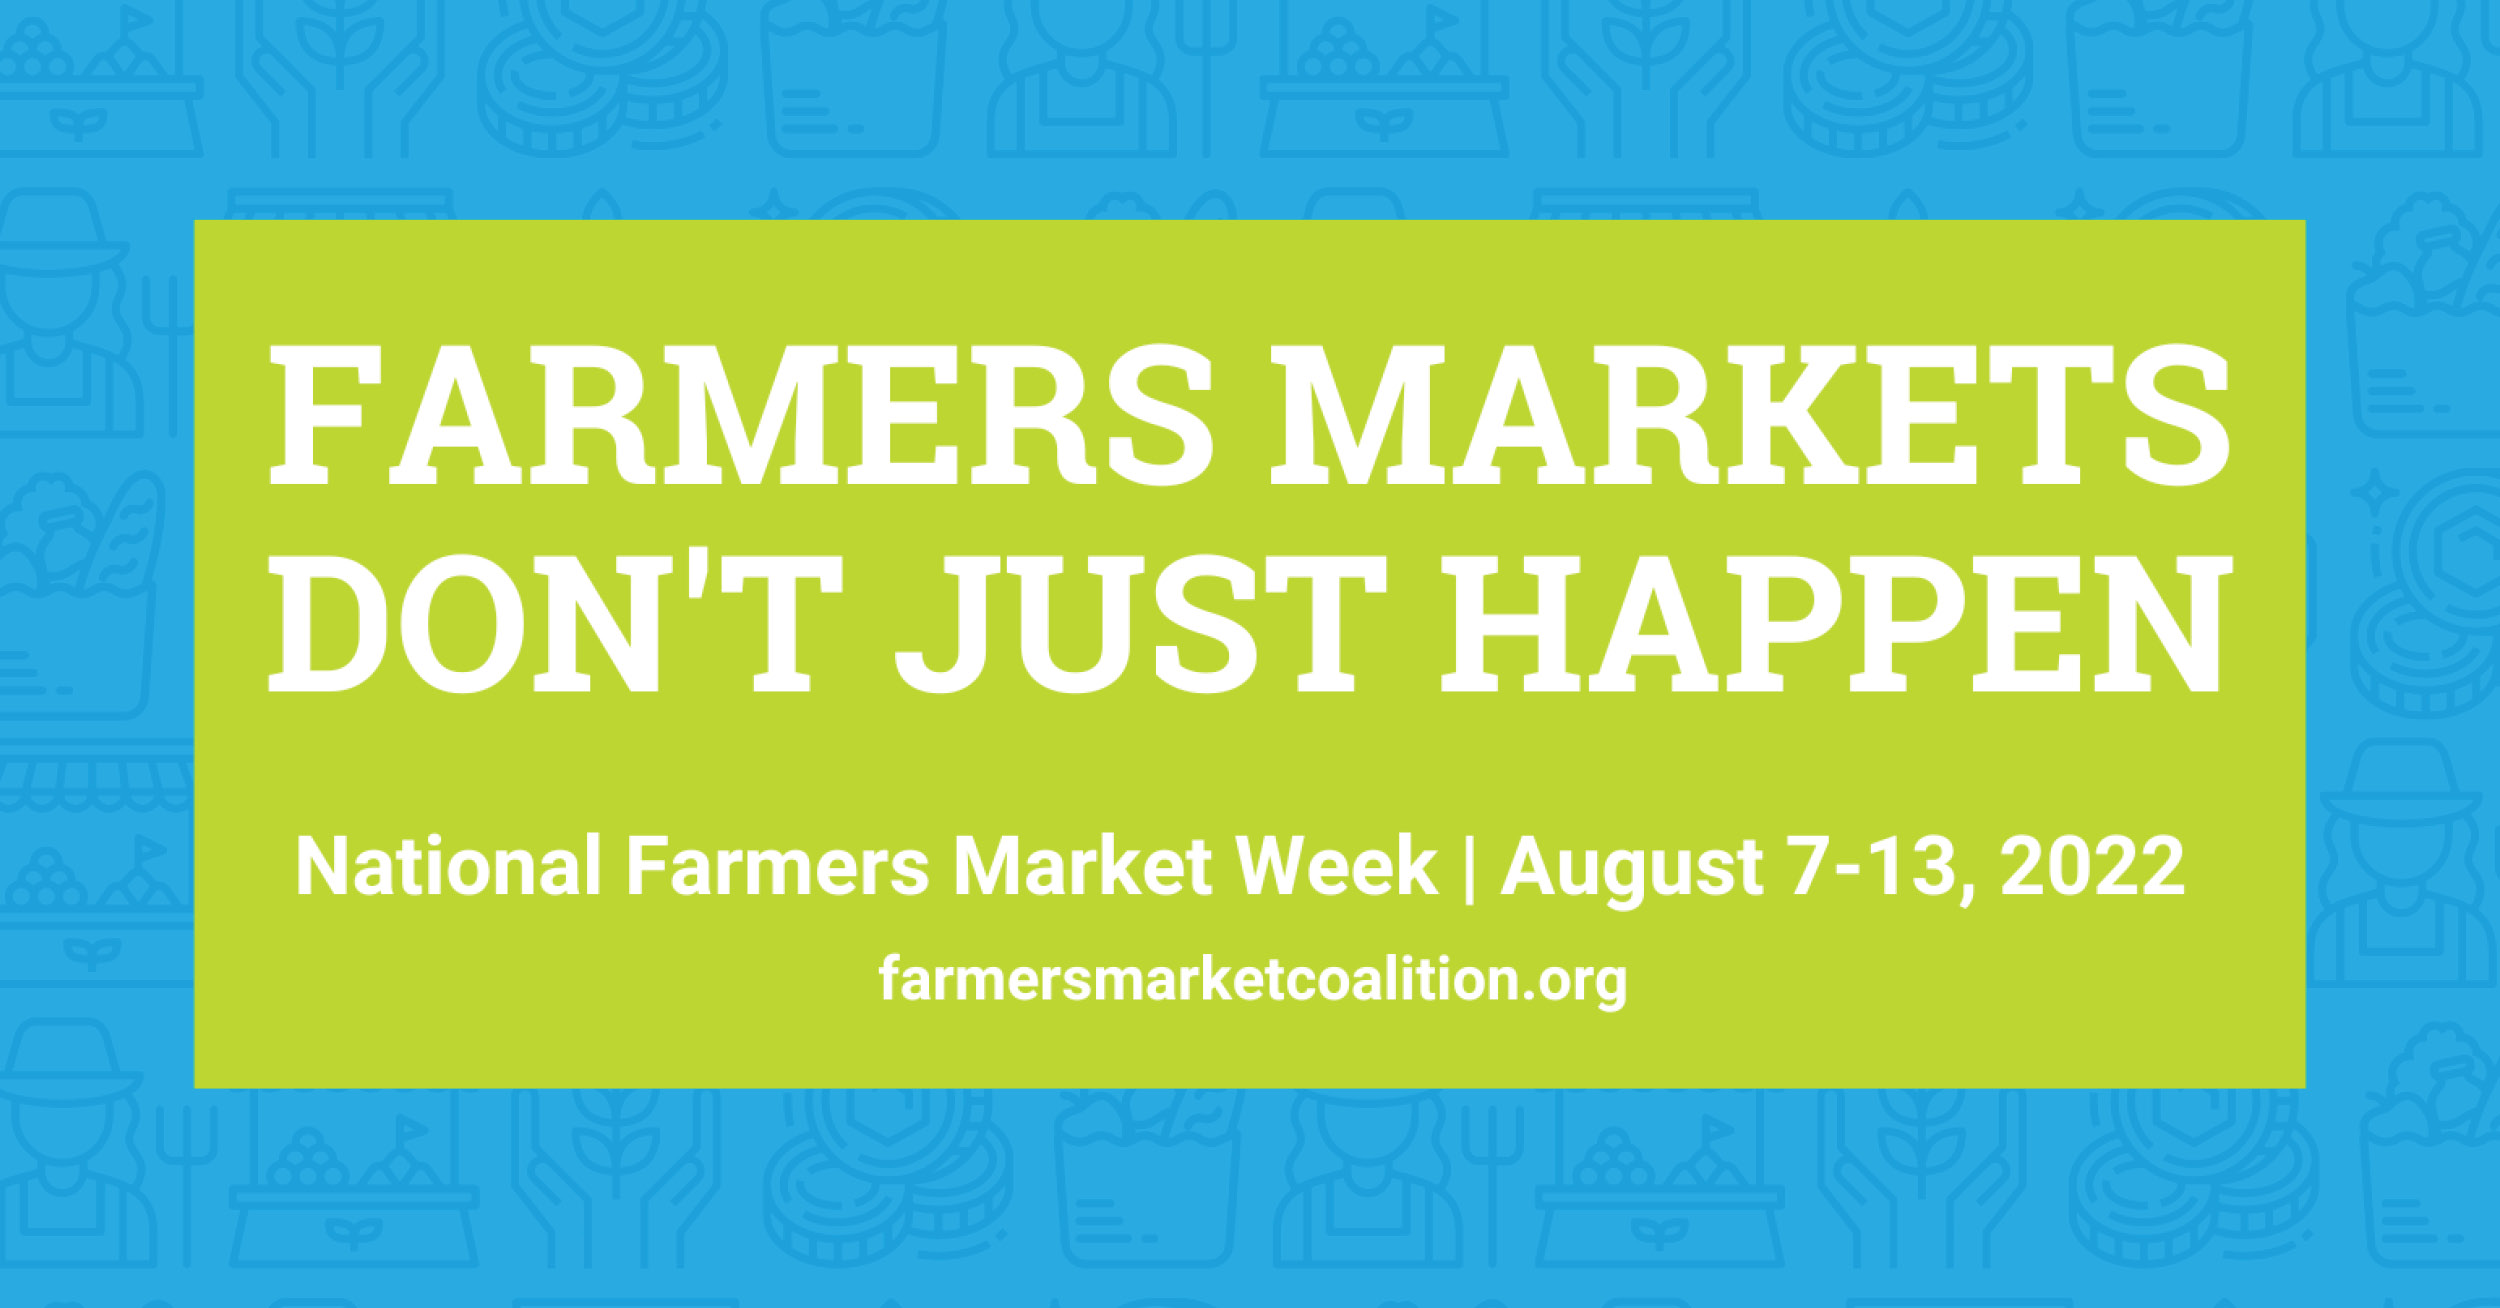 It’s National Farmers Market Week!